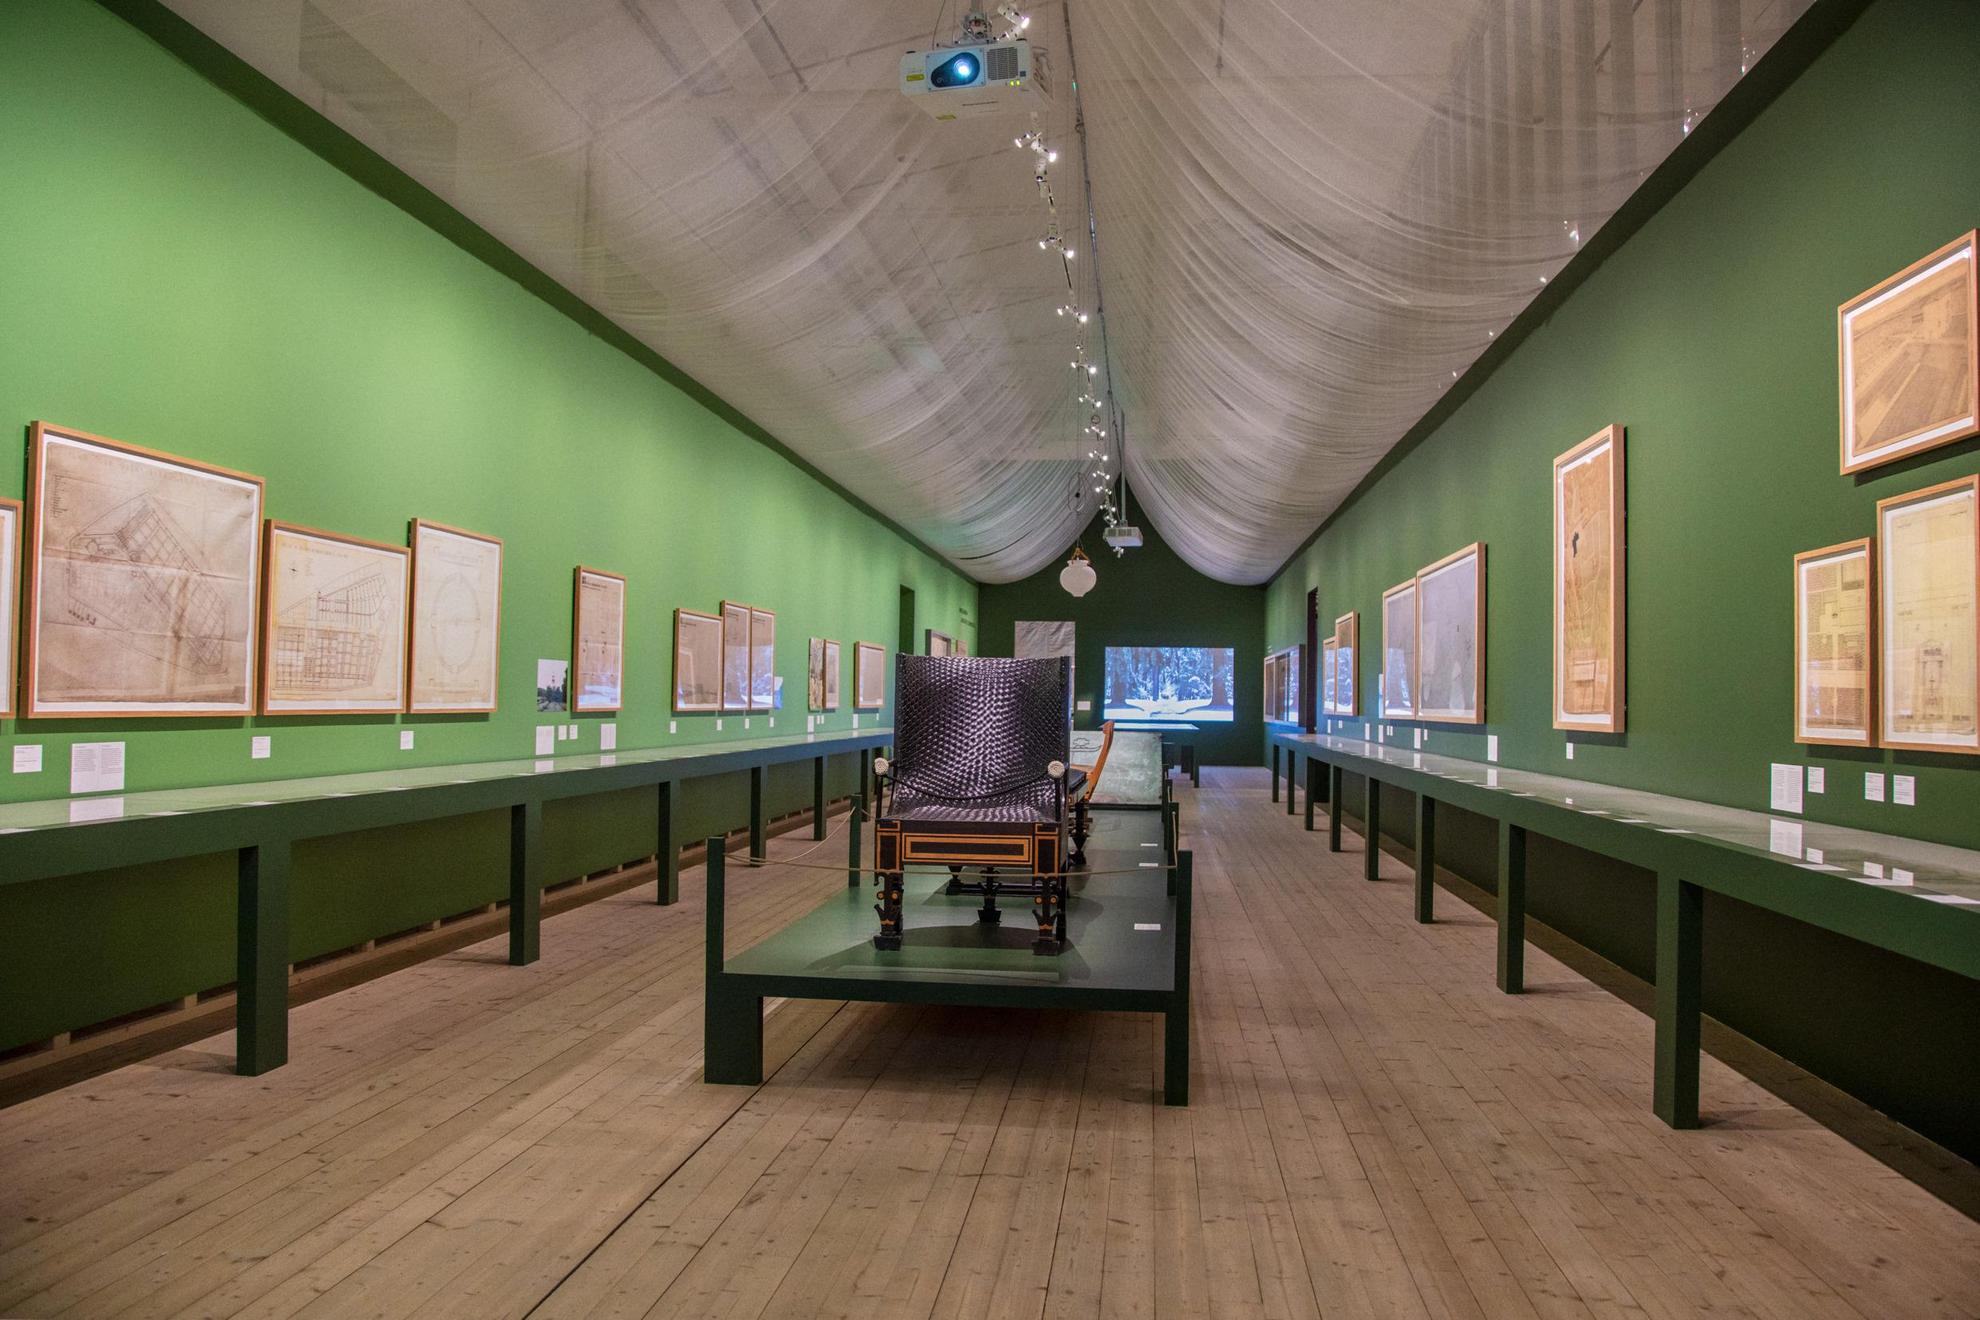 Une exposition d'art avec des peintures sur les murs verts et du mobilier au milieu de la salle.